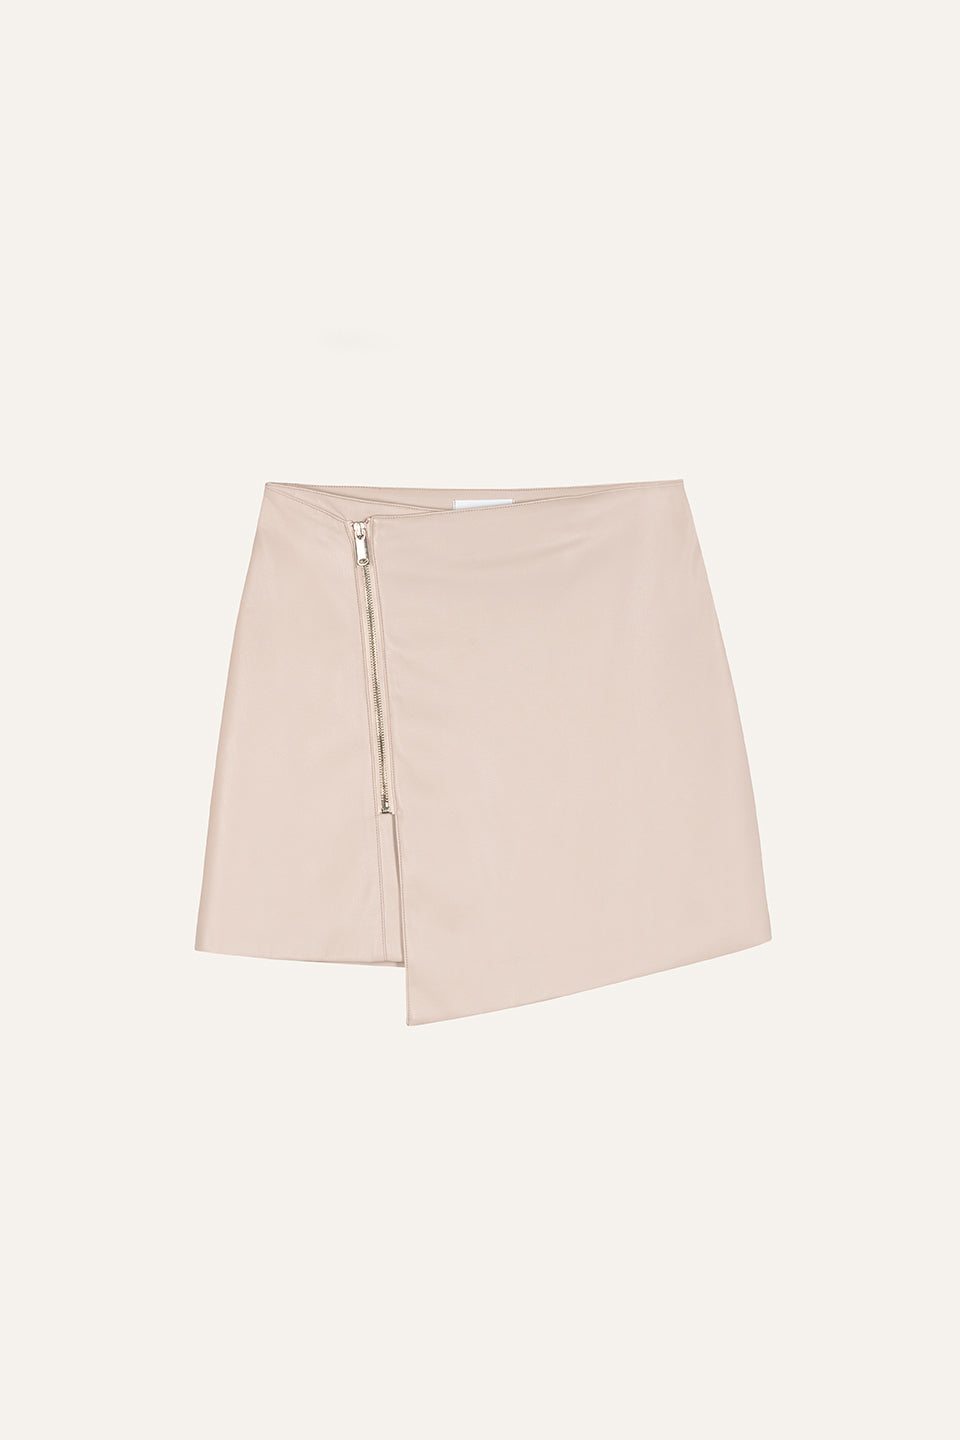 Avie Vegan Leather Mini Skirt Greige